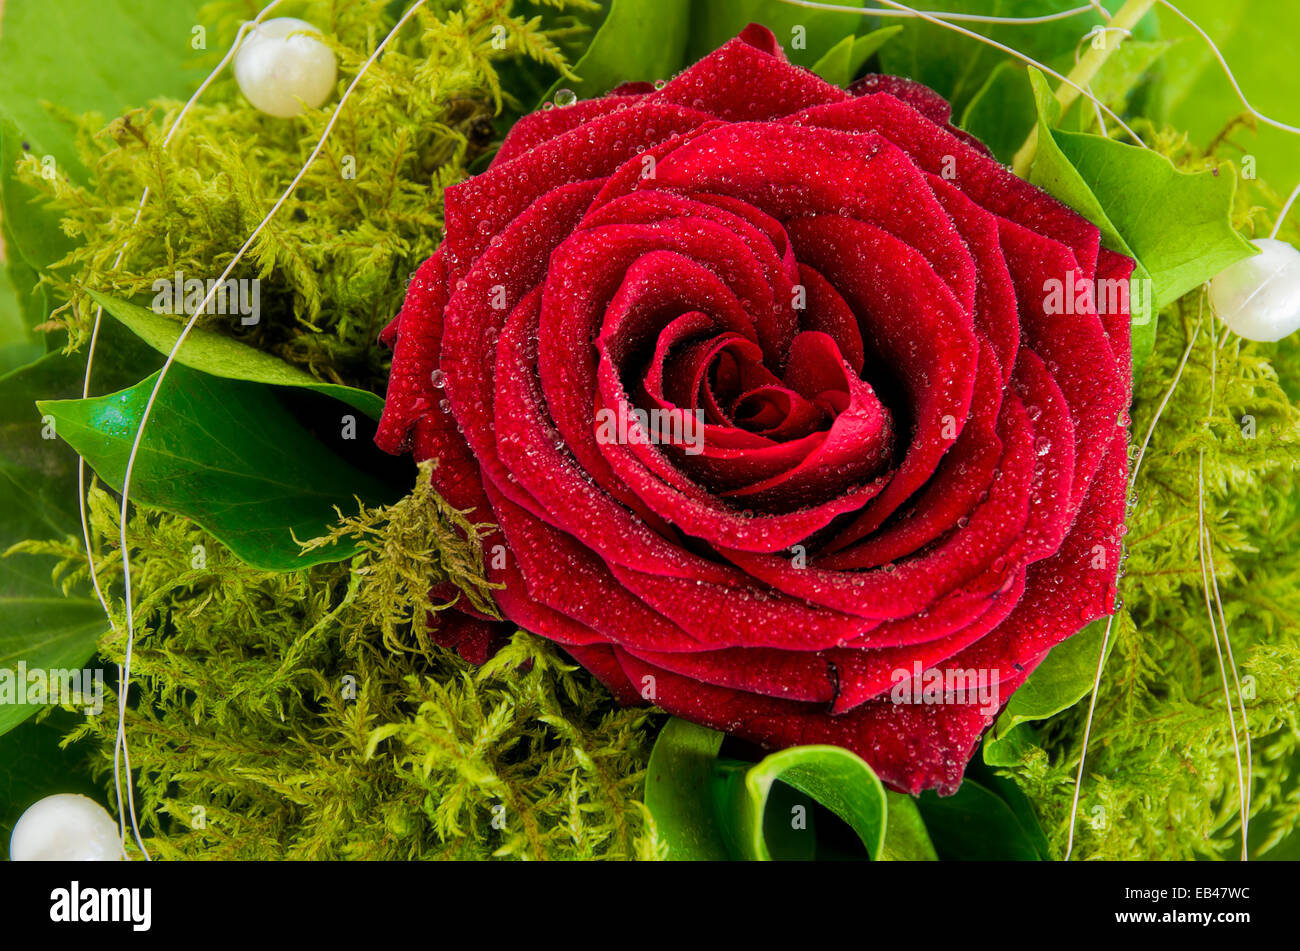 Rose unique avec les verts et déco perles dans un bouquet. Banque D'Images